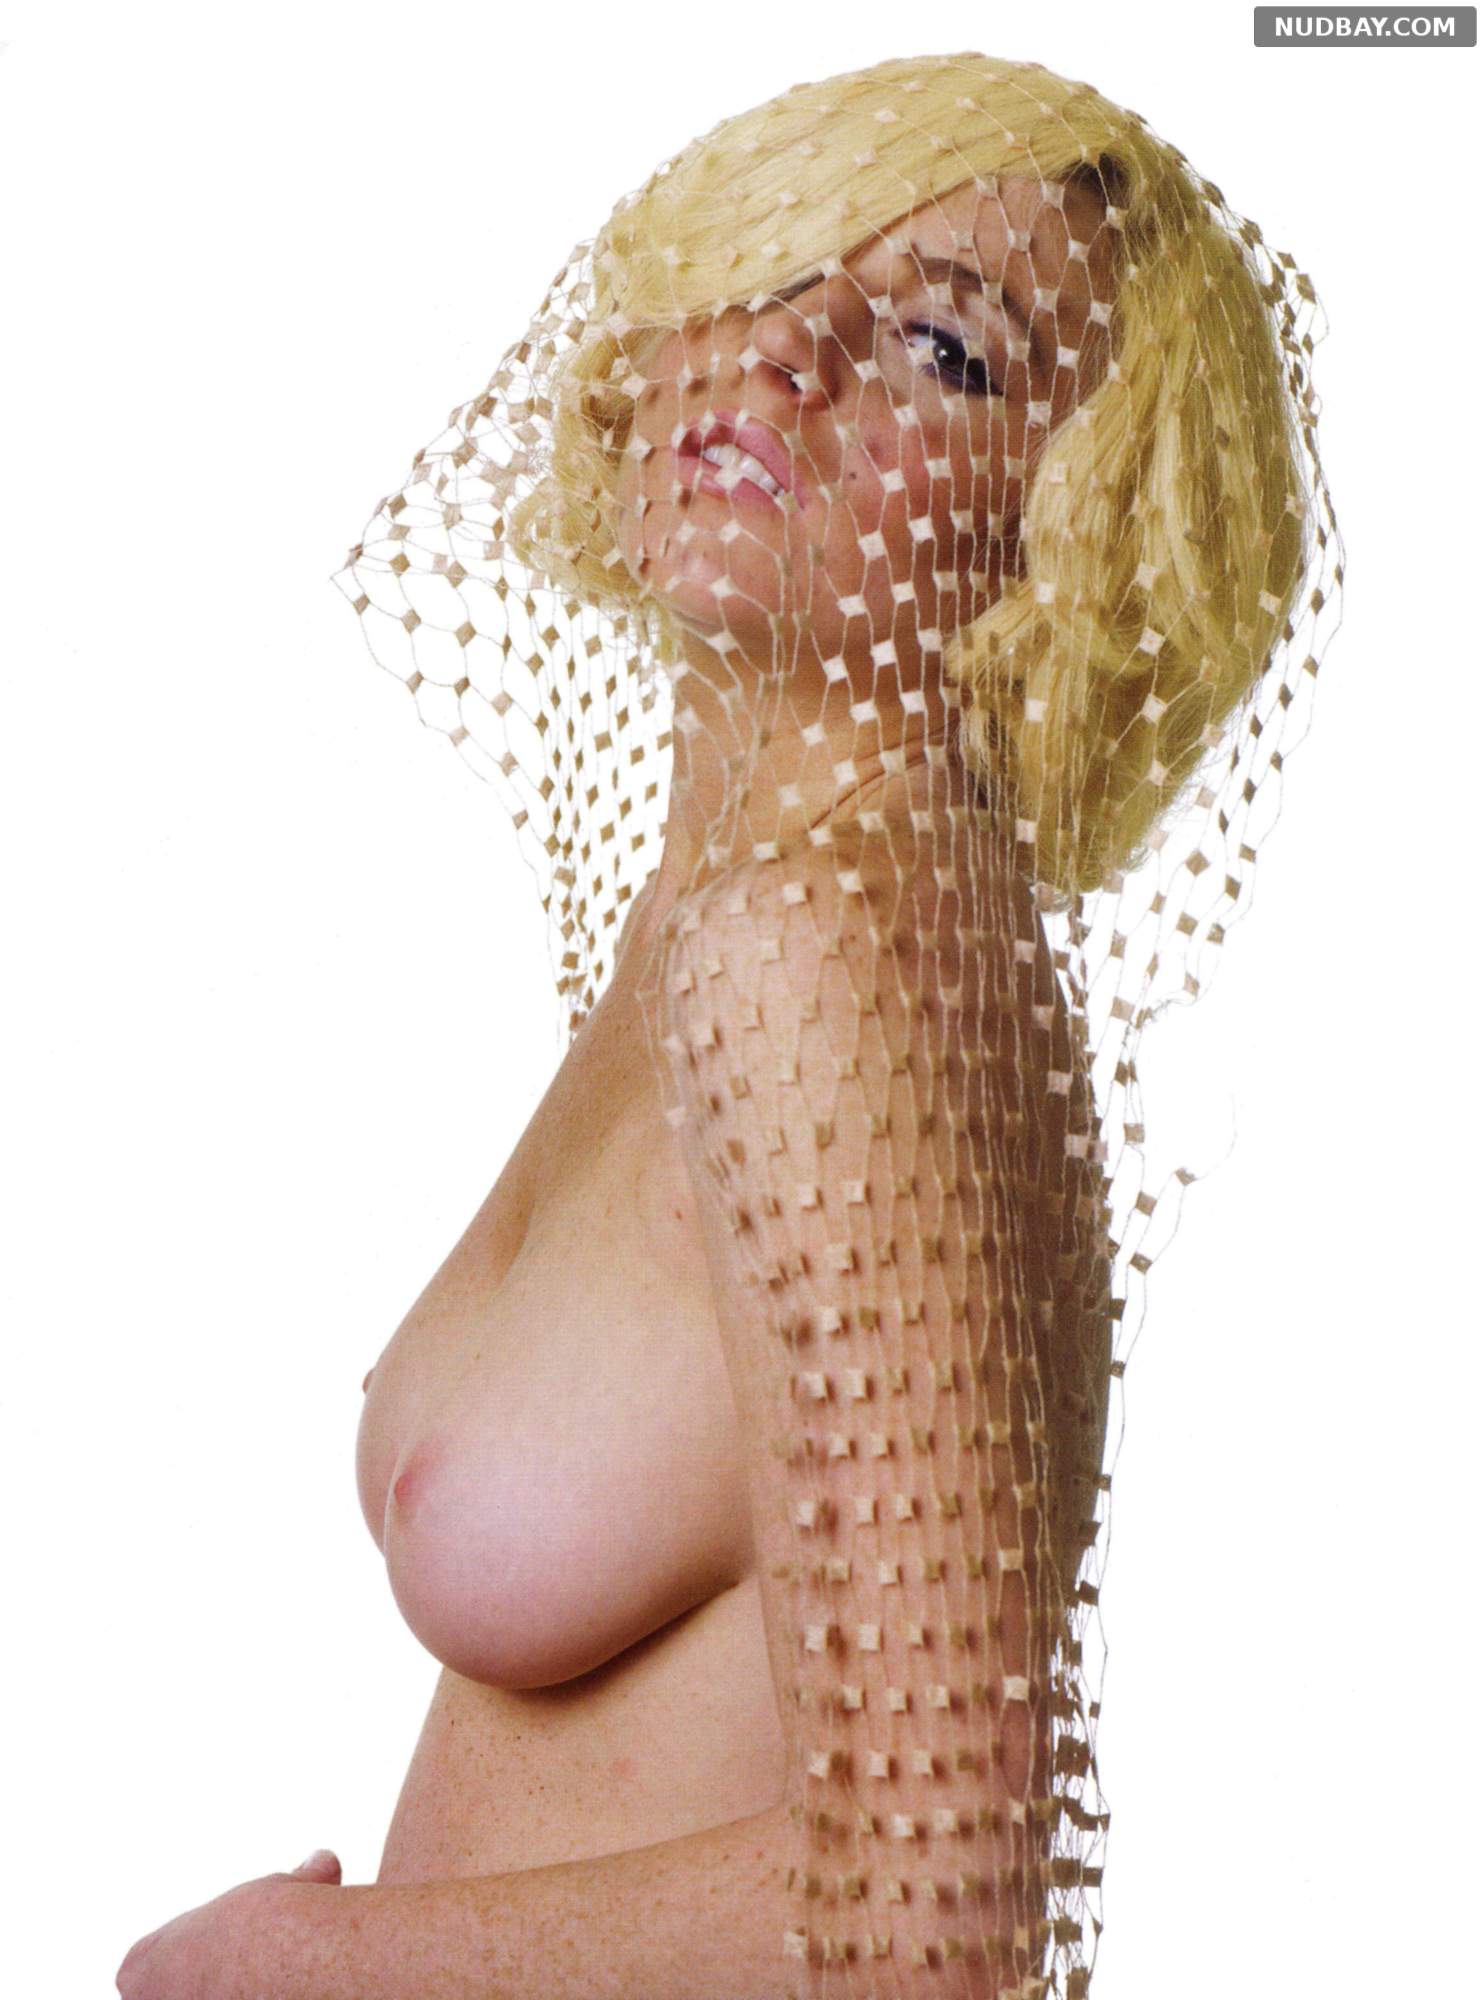 Nude photos lohan lindsay Lindsay Lohan